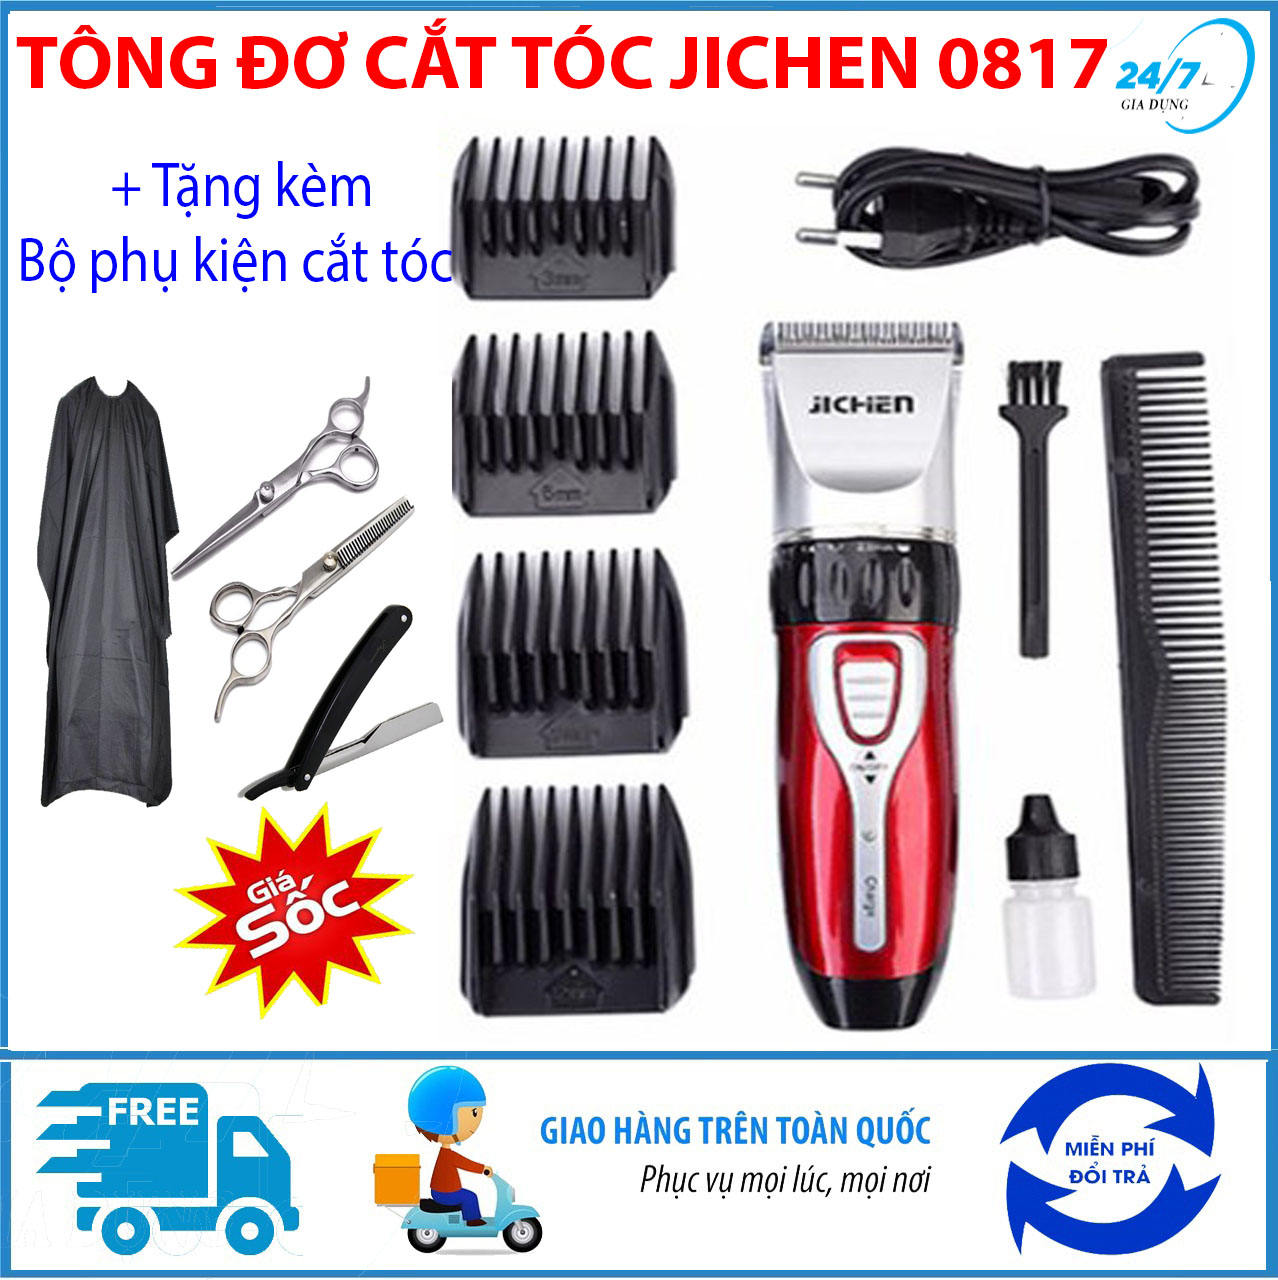 tang-bo-phu-kien-cat-toc-4-mon-tong-do-cat-toc-tre-em-jichen-0817-tong-do-cat-toc-chuyen-nghiepkhong-day-may-cat-toc-da-nang-tang-do-hot-toc-cho-be-an-toan-tien-loi-i1345007339-s5529914636.html-0